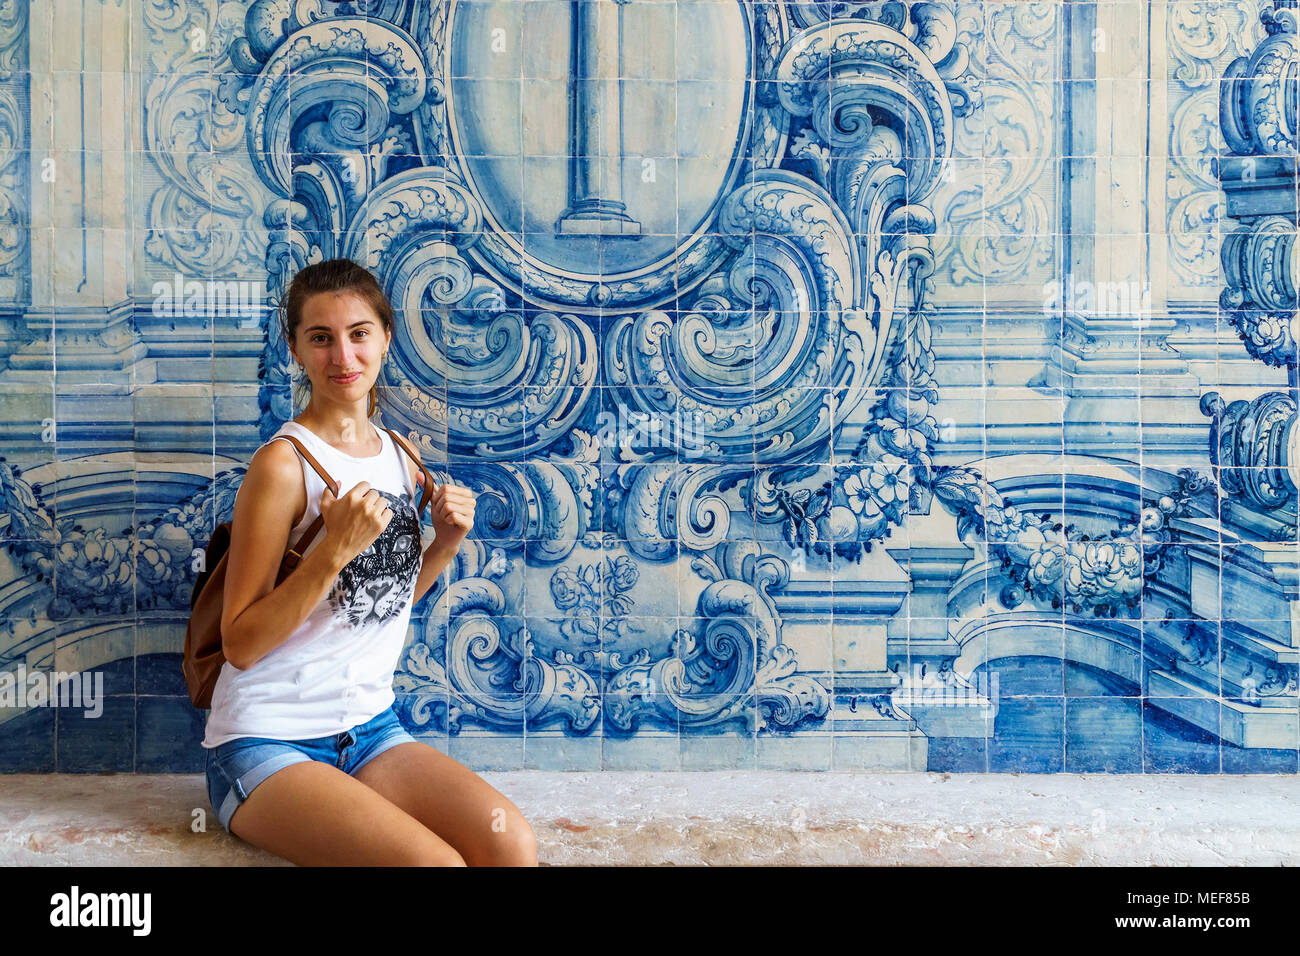 Young Woman Posing touristique près d'azulejos portugais à Lisbonne Mur Banque D'Images